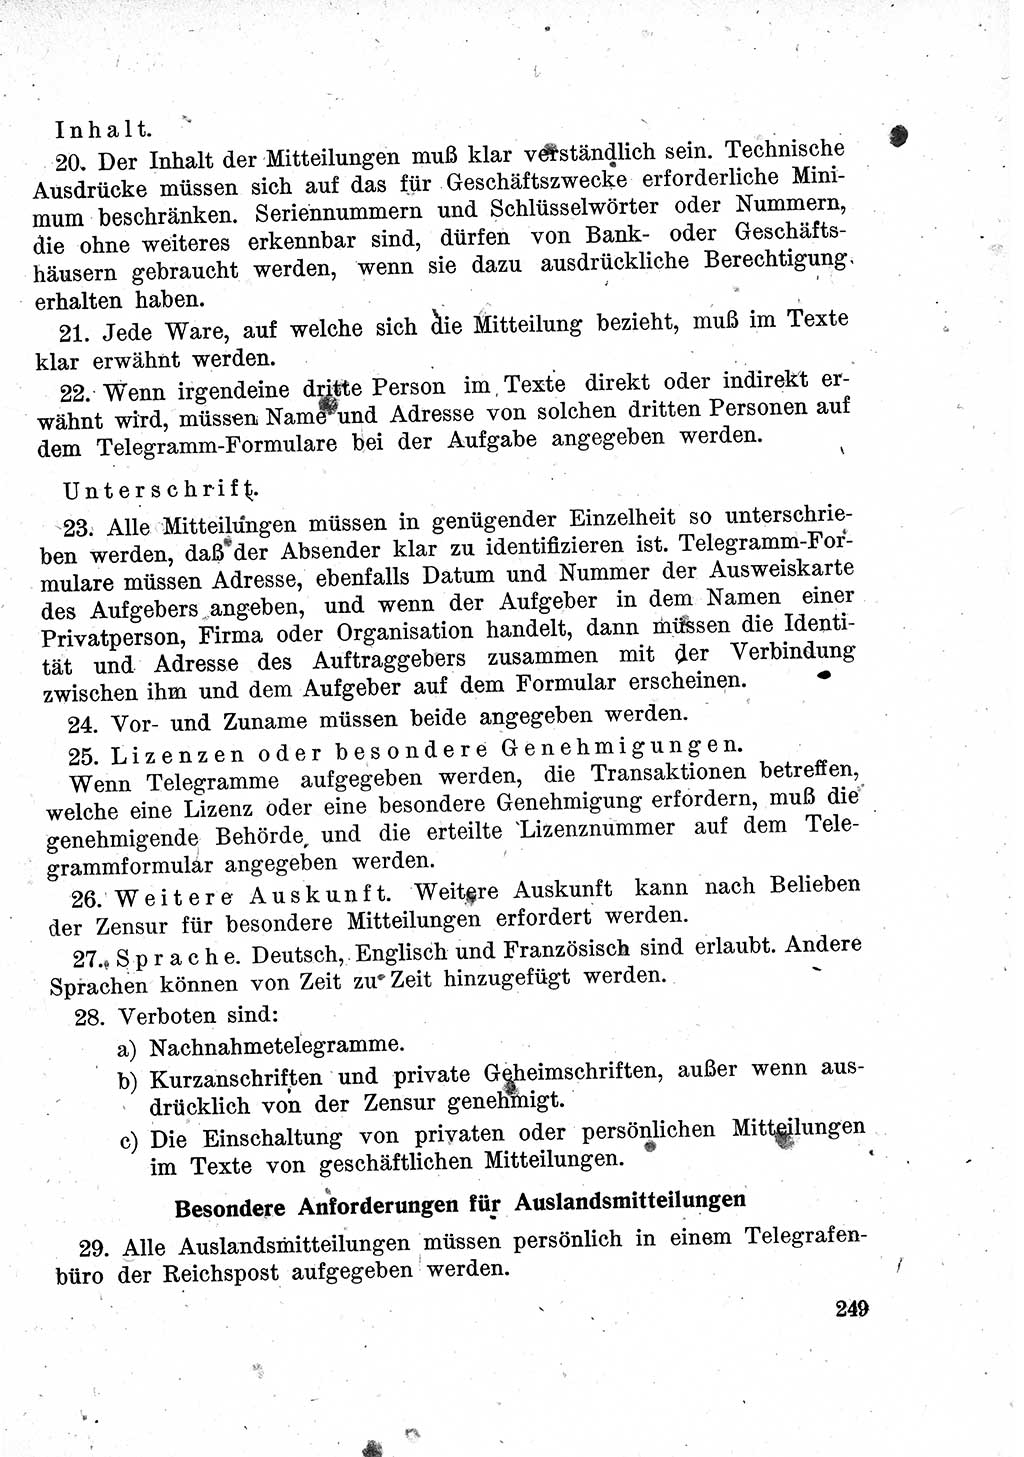 Das Recht der Besatzungsmacht (Deutschland), Proklamationen, Deklerationen, Verordnungen, Gesetze und Bekanntmachungen 1947, Seite 249 (R. Bes. Dtl. 1947, S. 249)